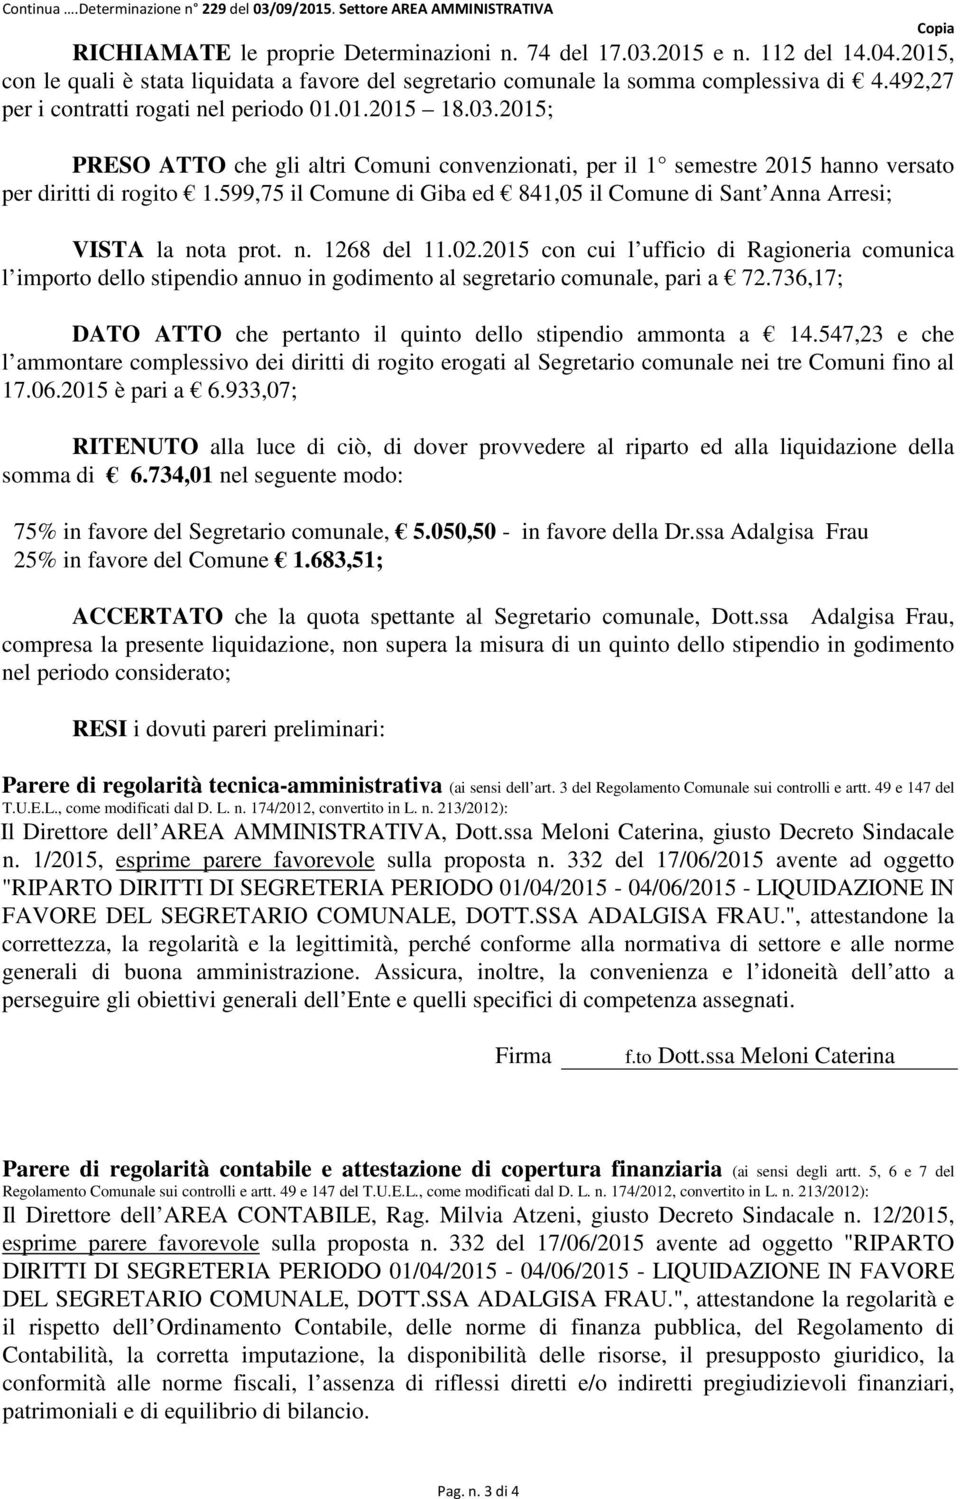 2015; PRESO ATTO che gli altri Comuni convenzionati, per il 1 semestre 2015 hanno versato per diritti di rogito 1.599,75 il Comune di Giba ed 841,05 il Comune di Sant Anna Arresi; VISTA la nota prot.